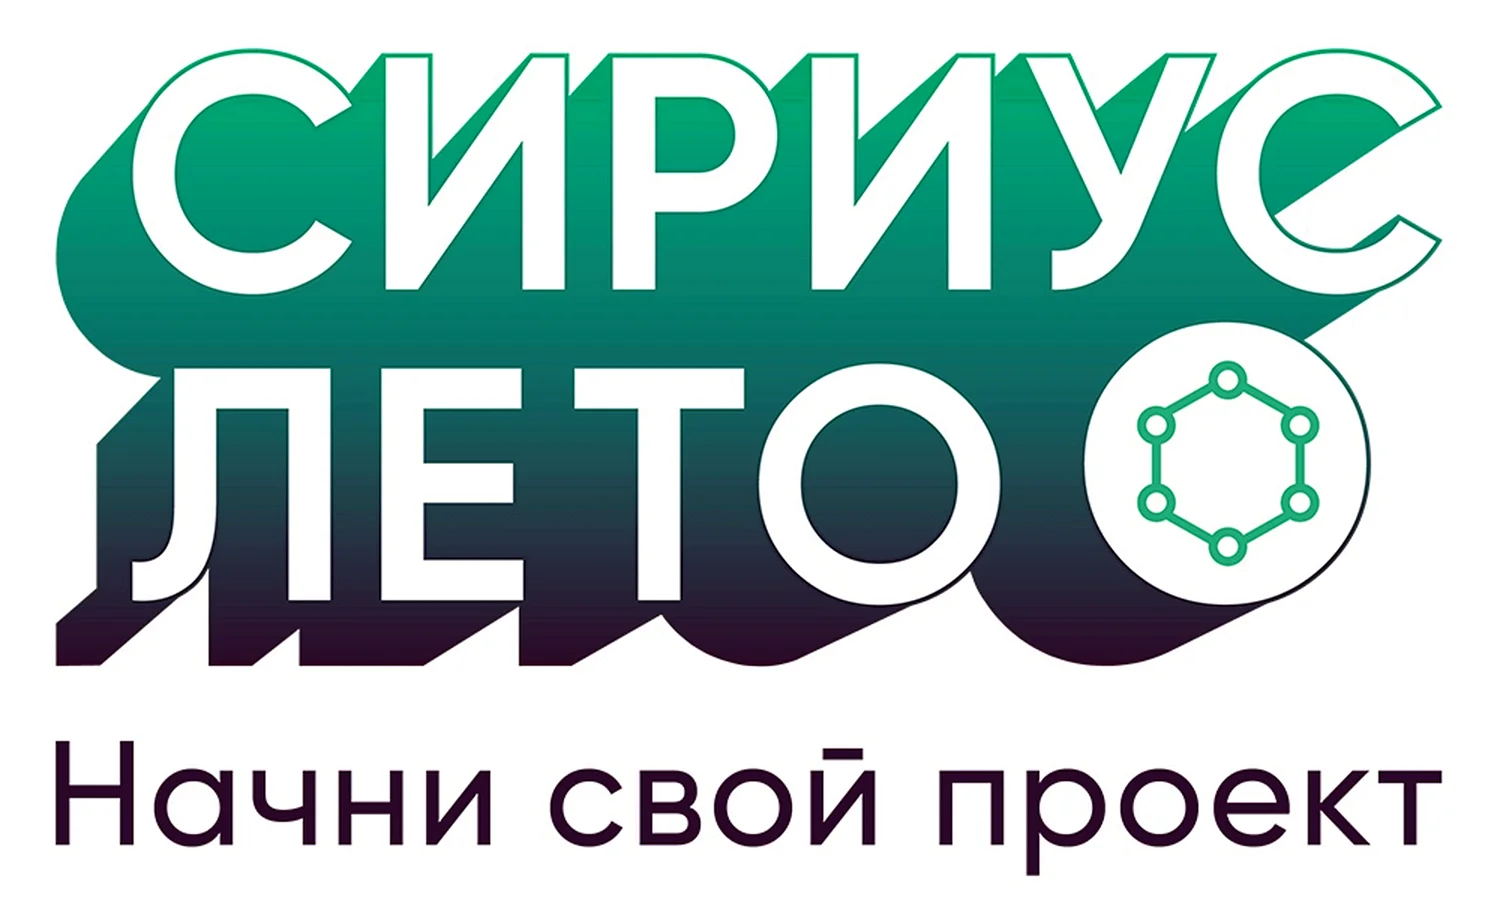 Сириус лето логотип